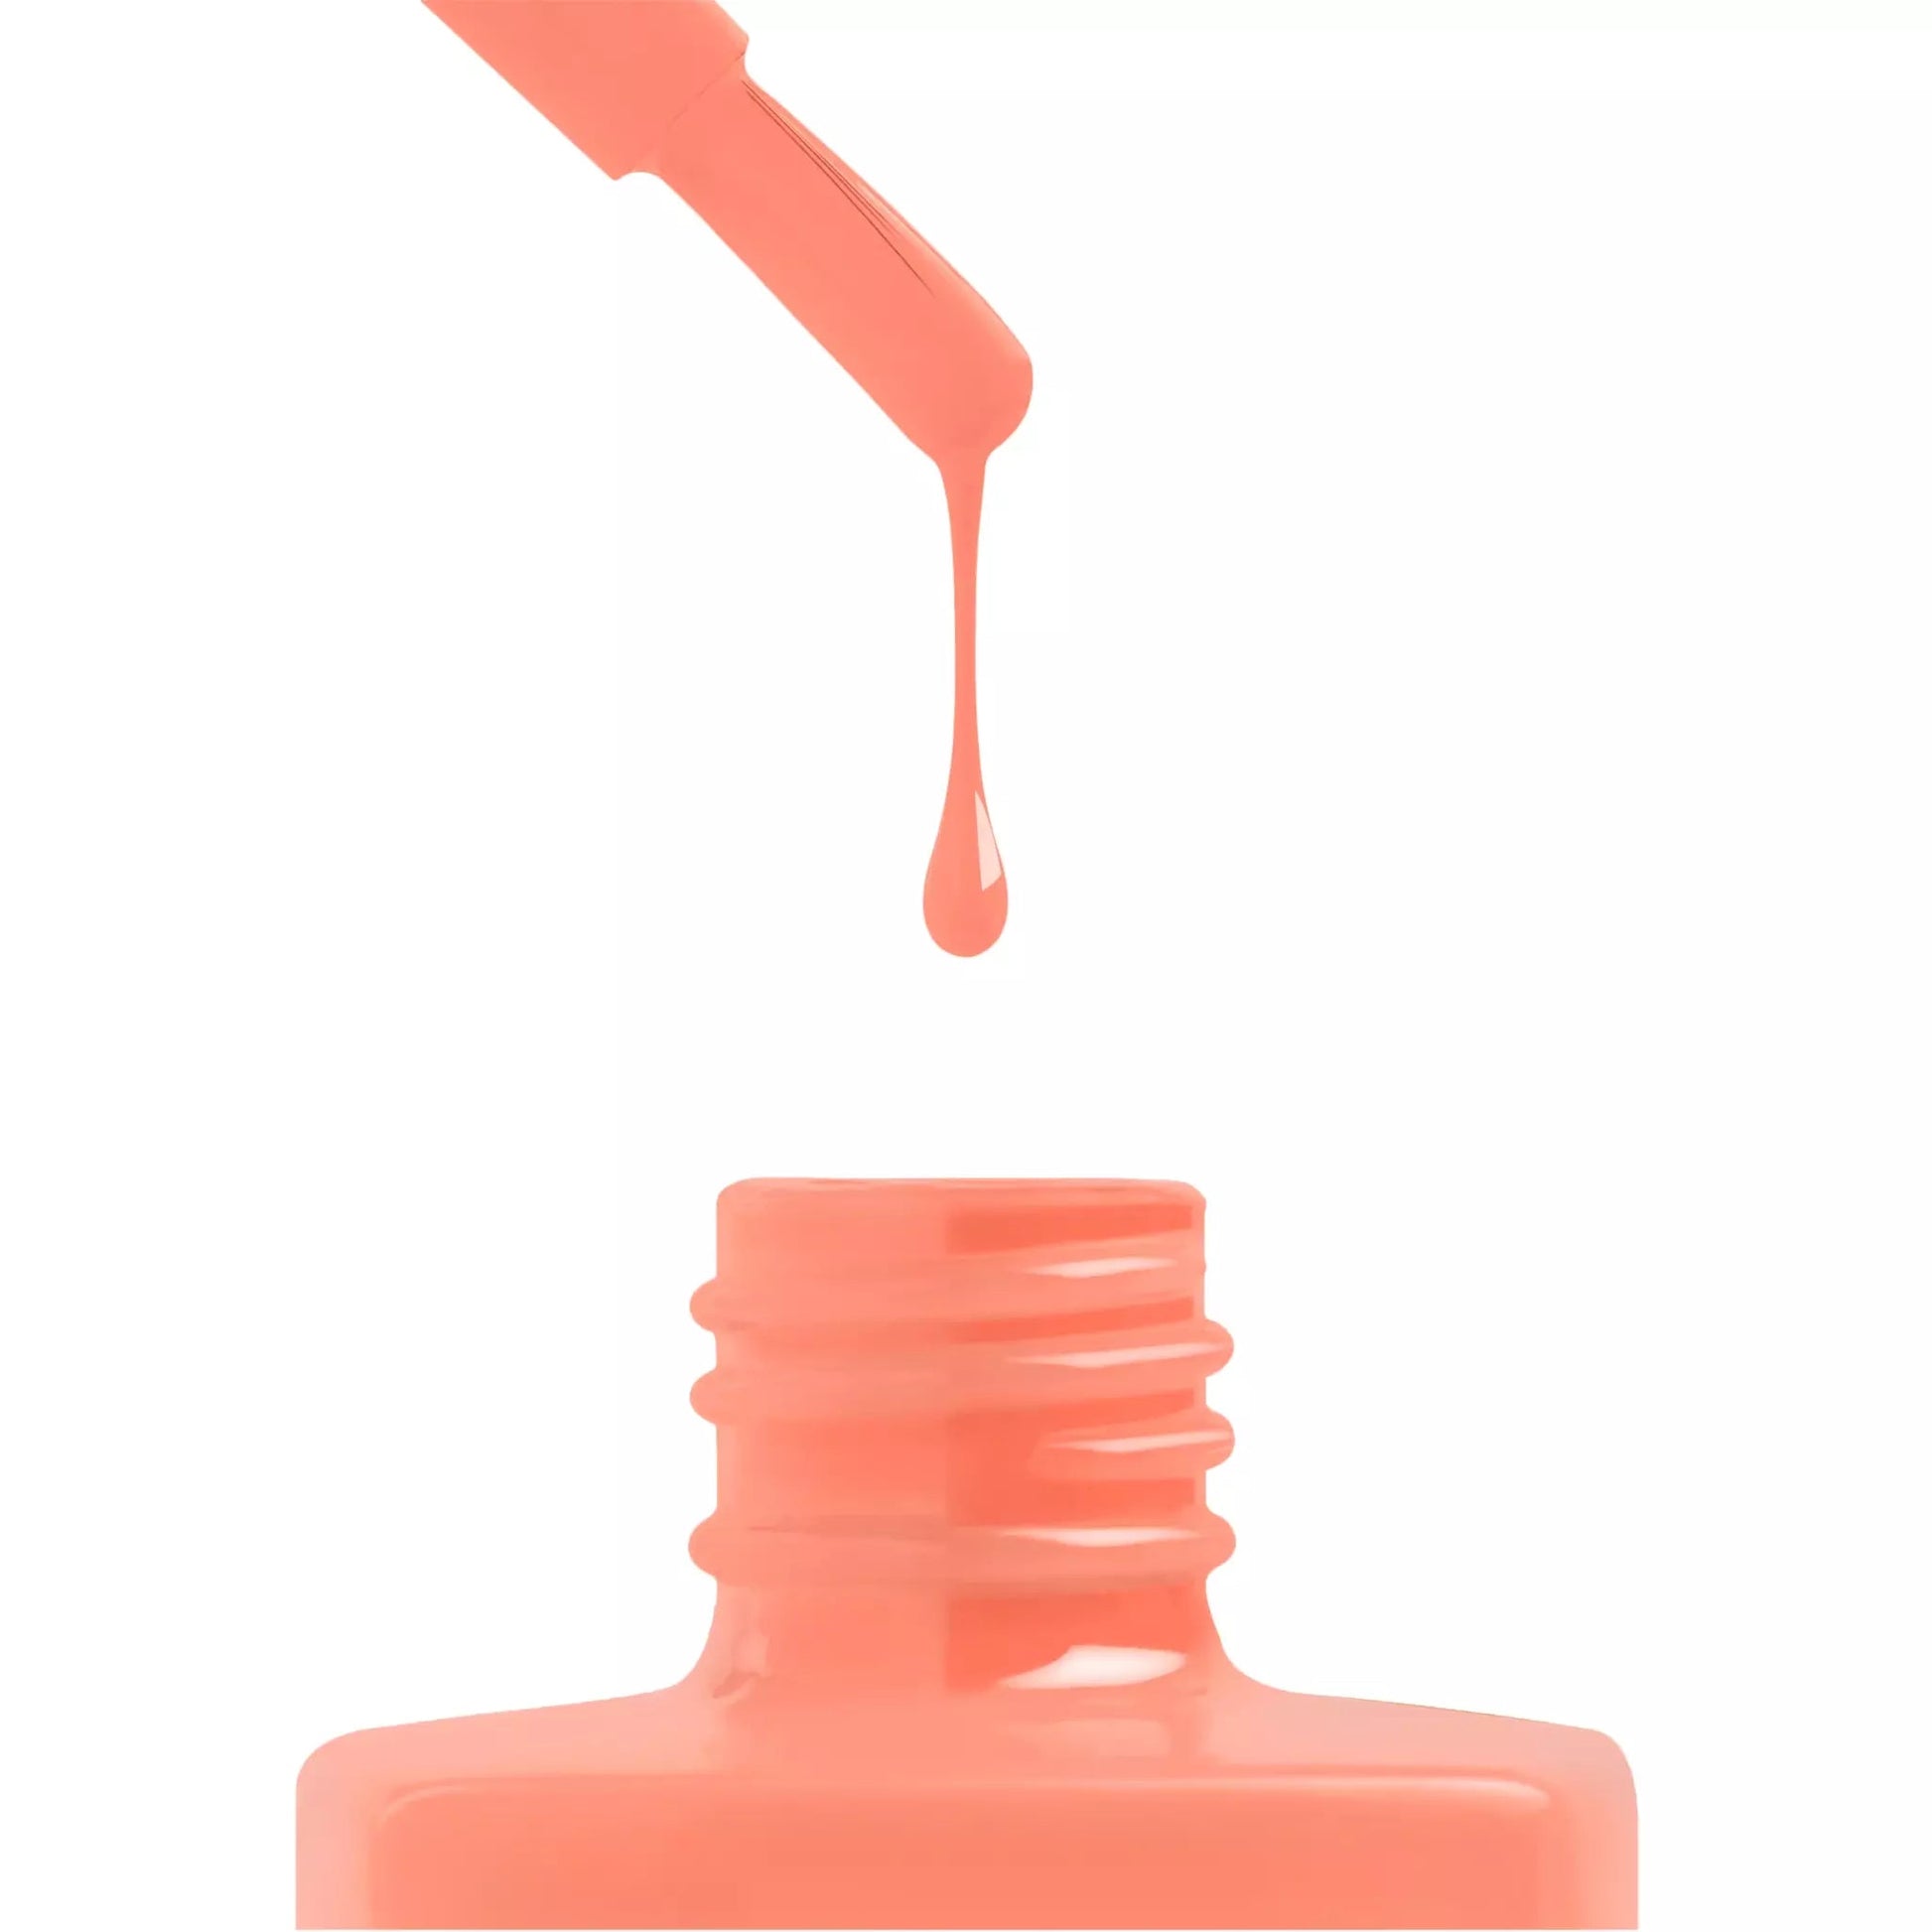 Aprés Gel Color Polish Orangesicle - 221 - Universal Nail Supplies